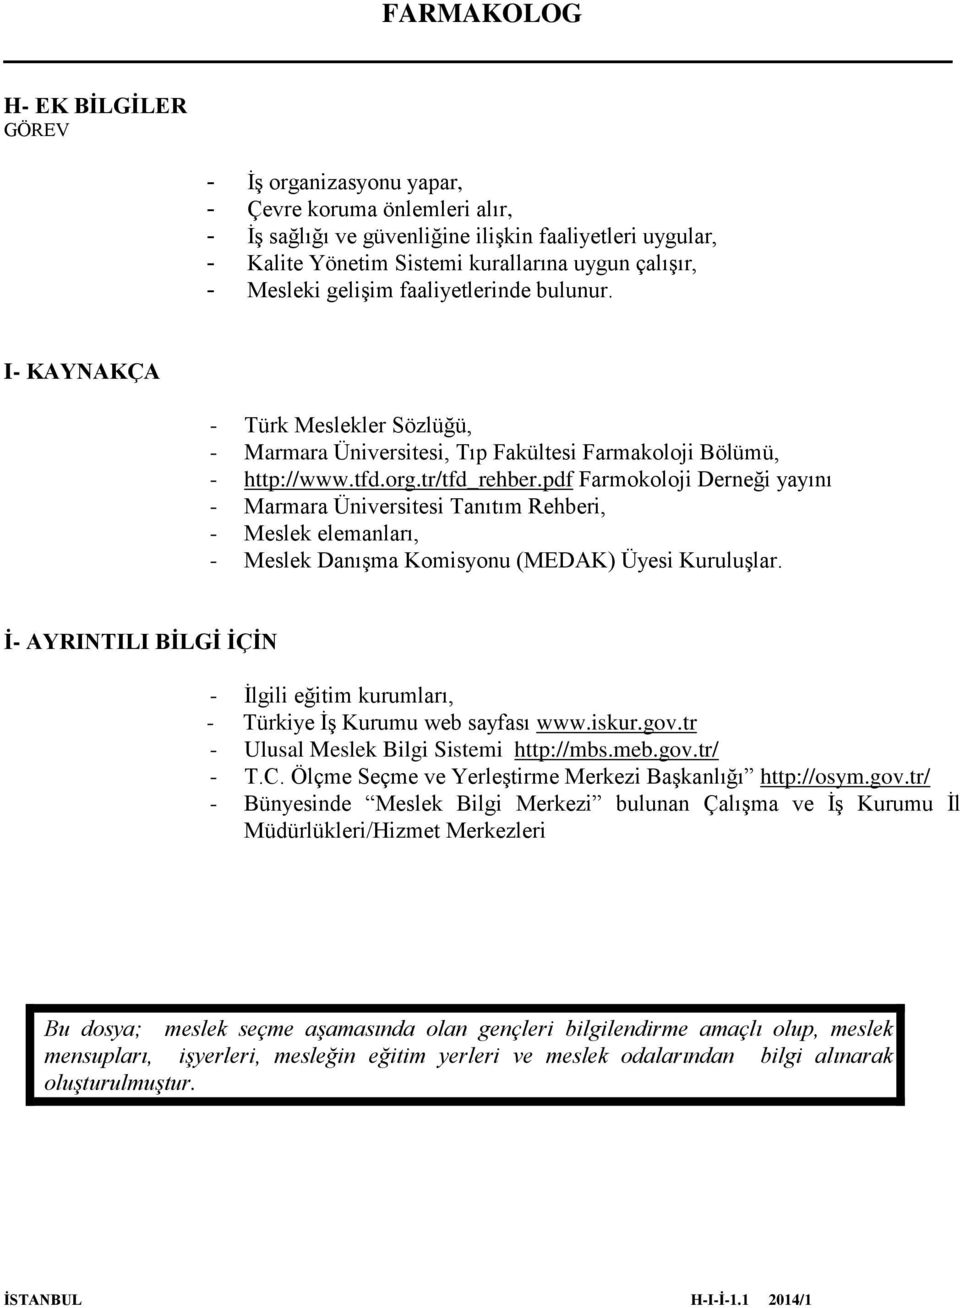 pdf Farmokoloji Derneği yayını - Marmara Üniversitesi Tanıtım Rehberi, - Meslek elemanları, - Meslek Danışma Komisyonu (MEDAK) Üyesi Kuruluşlar.